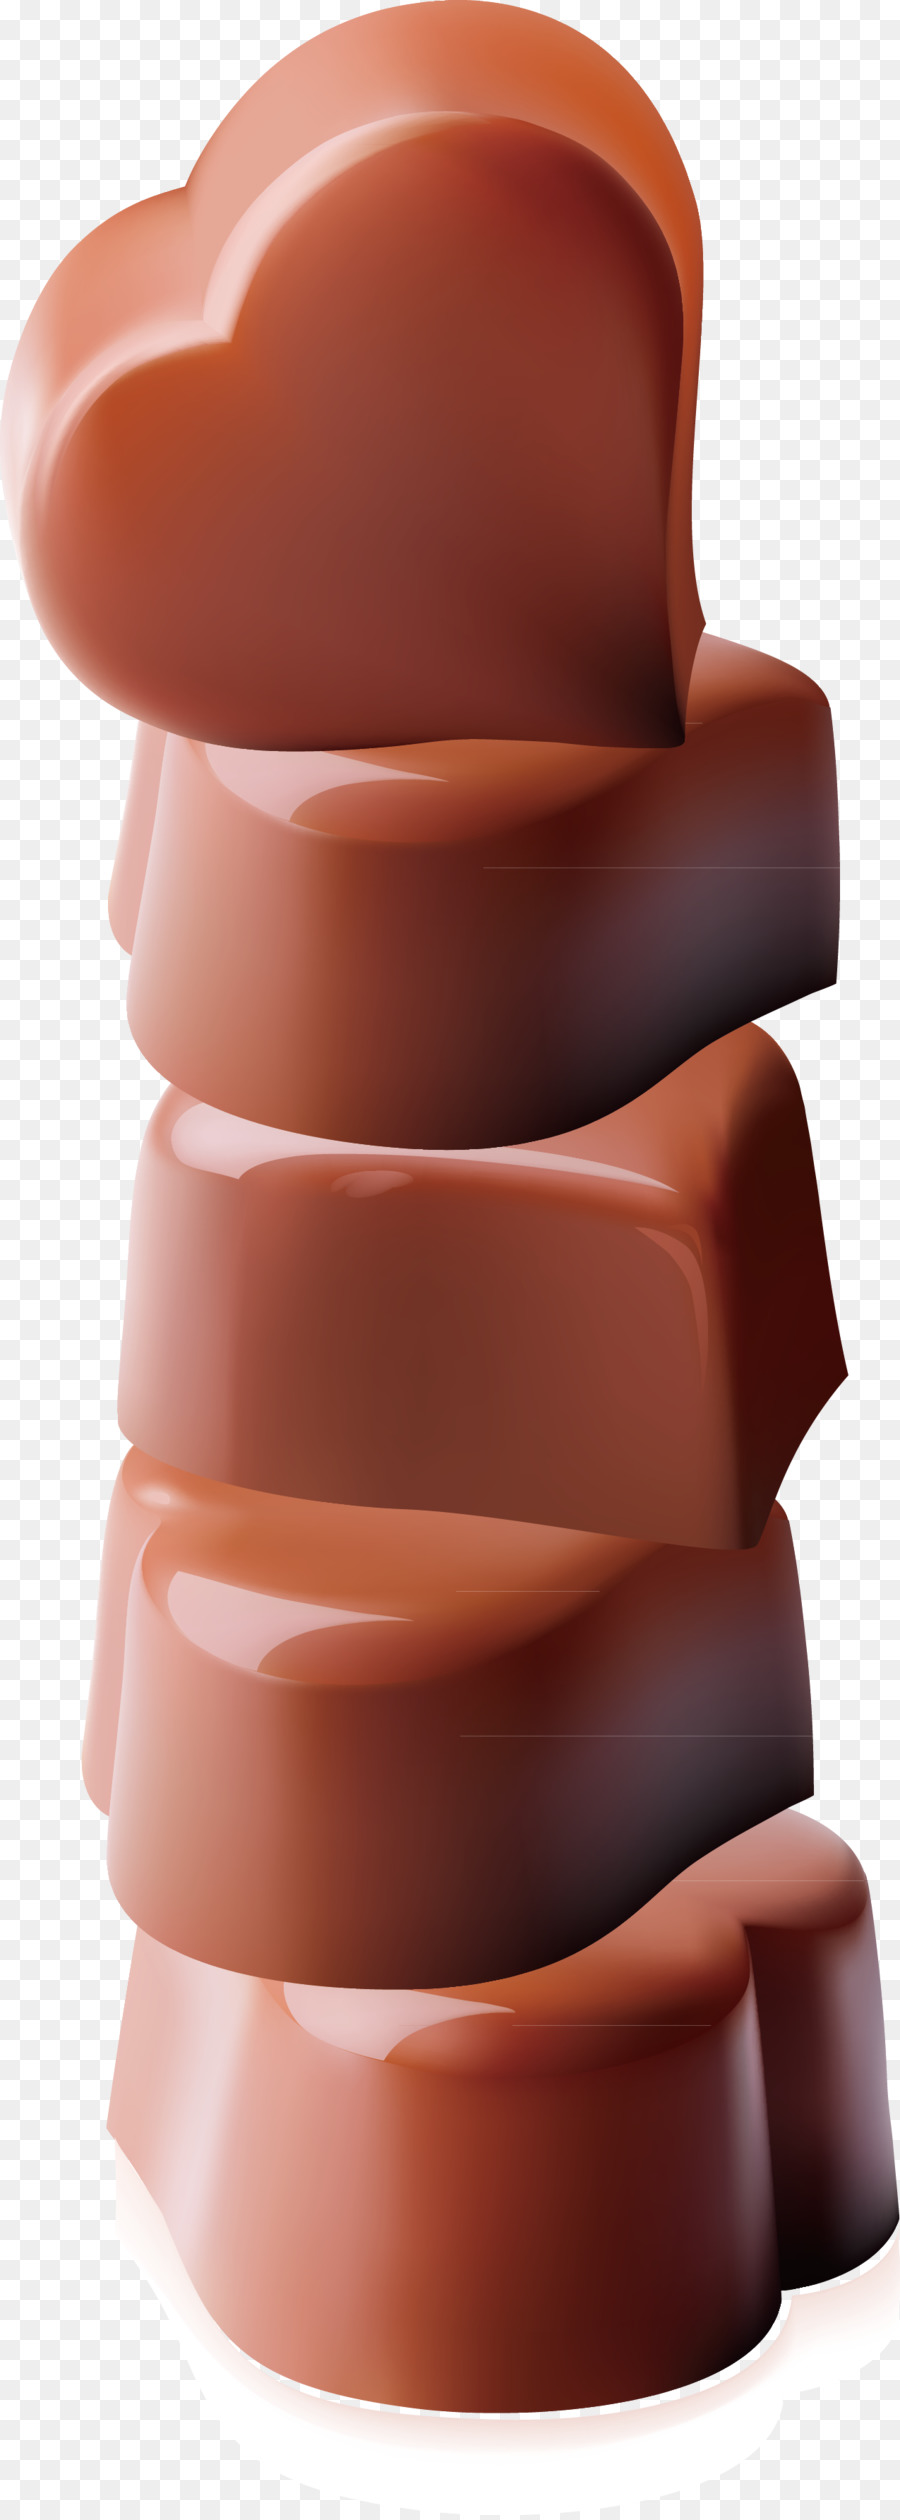 Pralinen-Schokolade-Kuchen mit Schokolade - Schokolade romantische Dekoration-Vektor